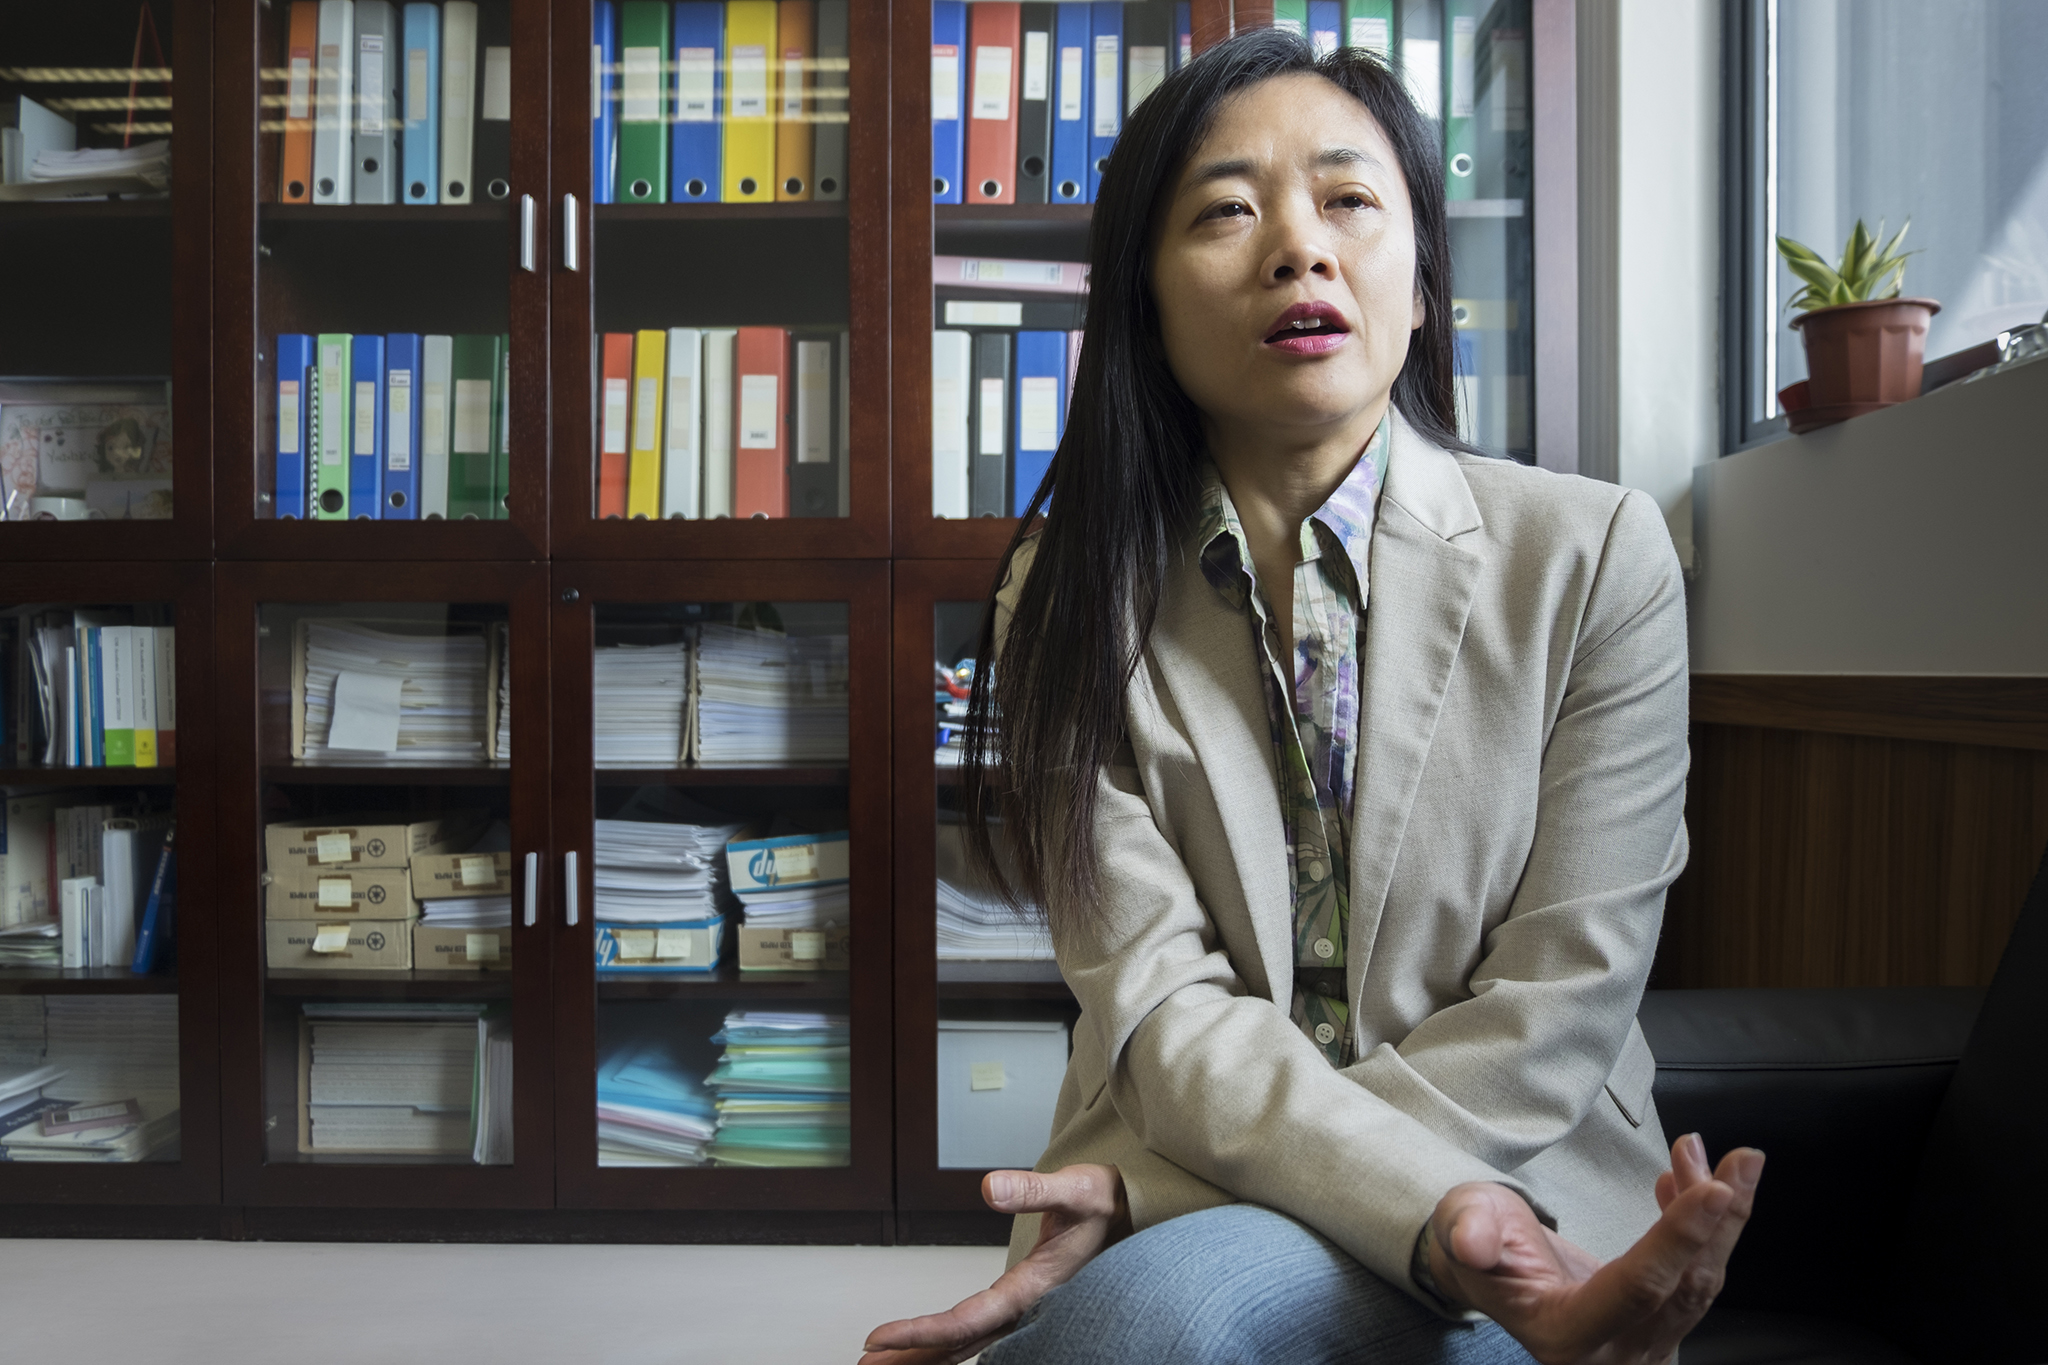 Rose Neng Lai, professora Universidade de Macau, sobre o imobiliário: “Somos asiáticos: gostamos de tijolo e cimento”